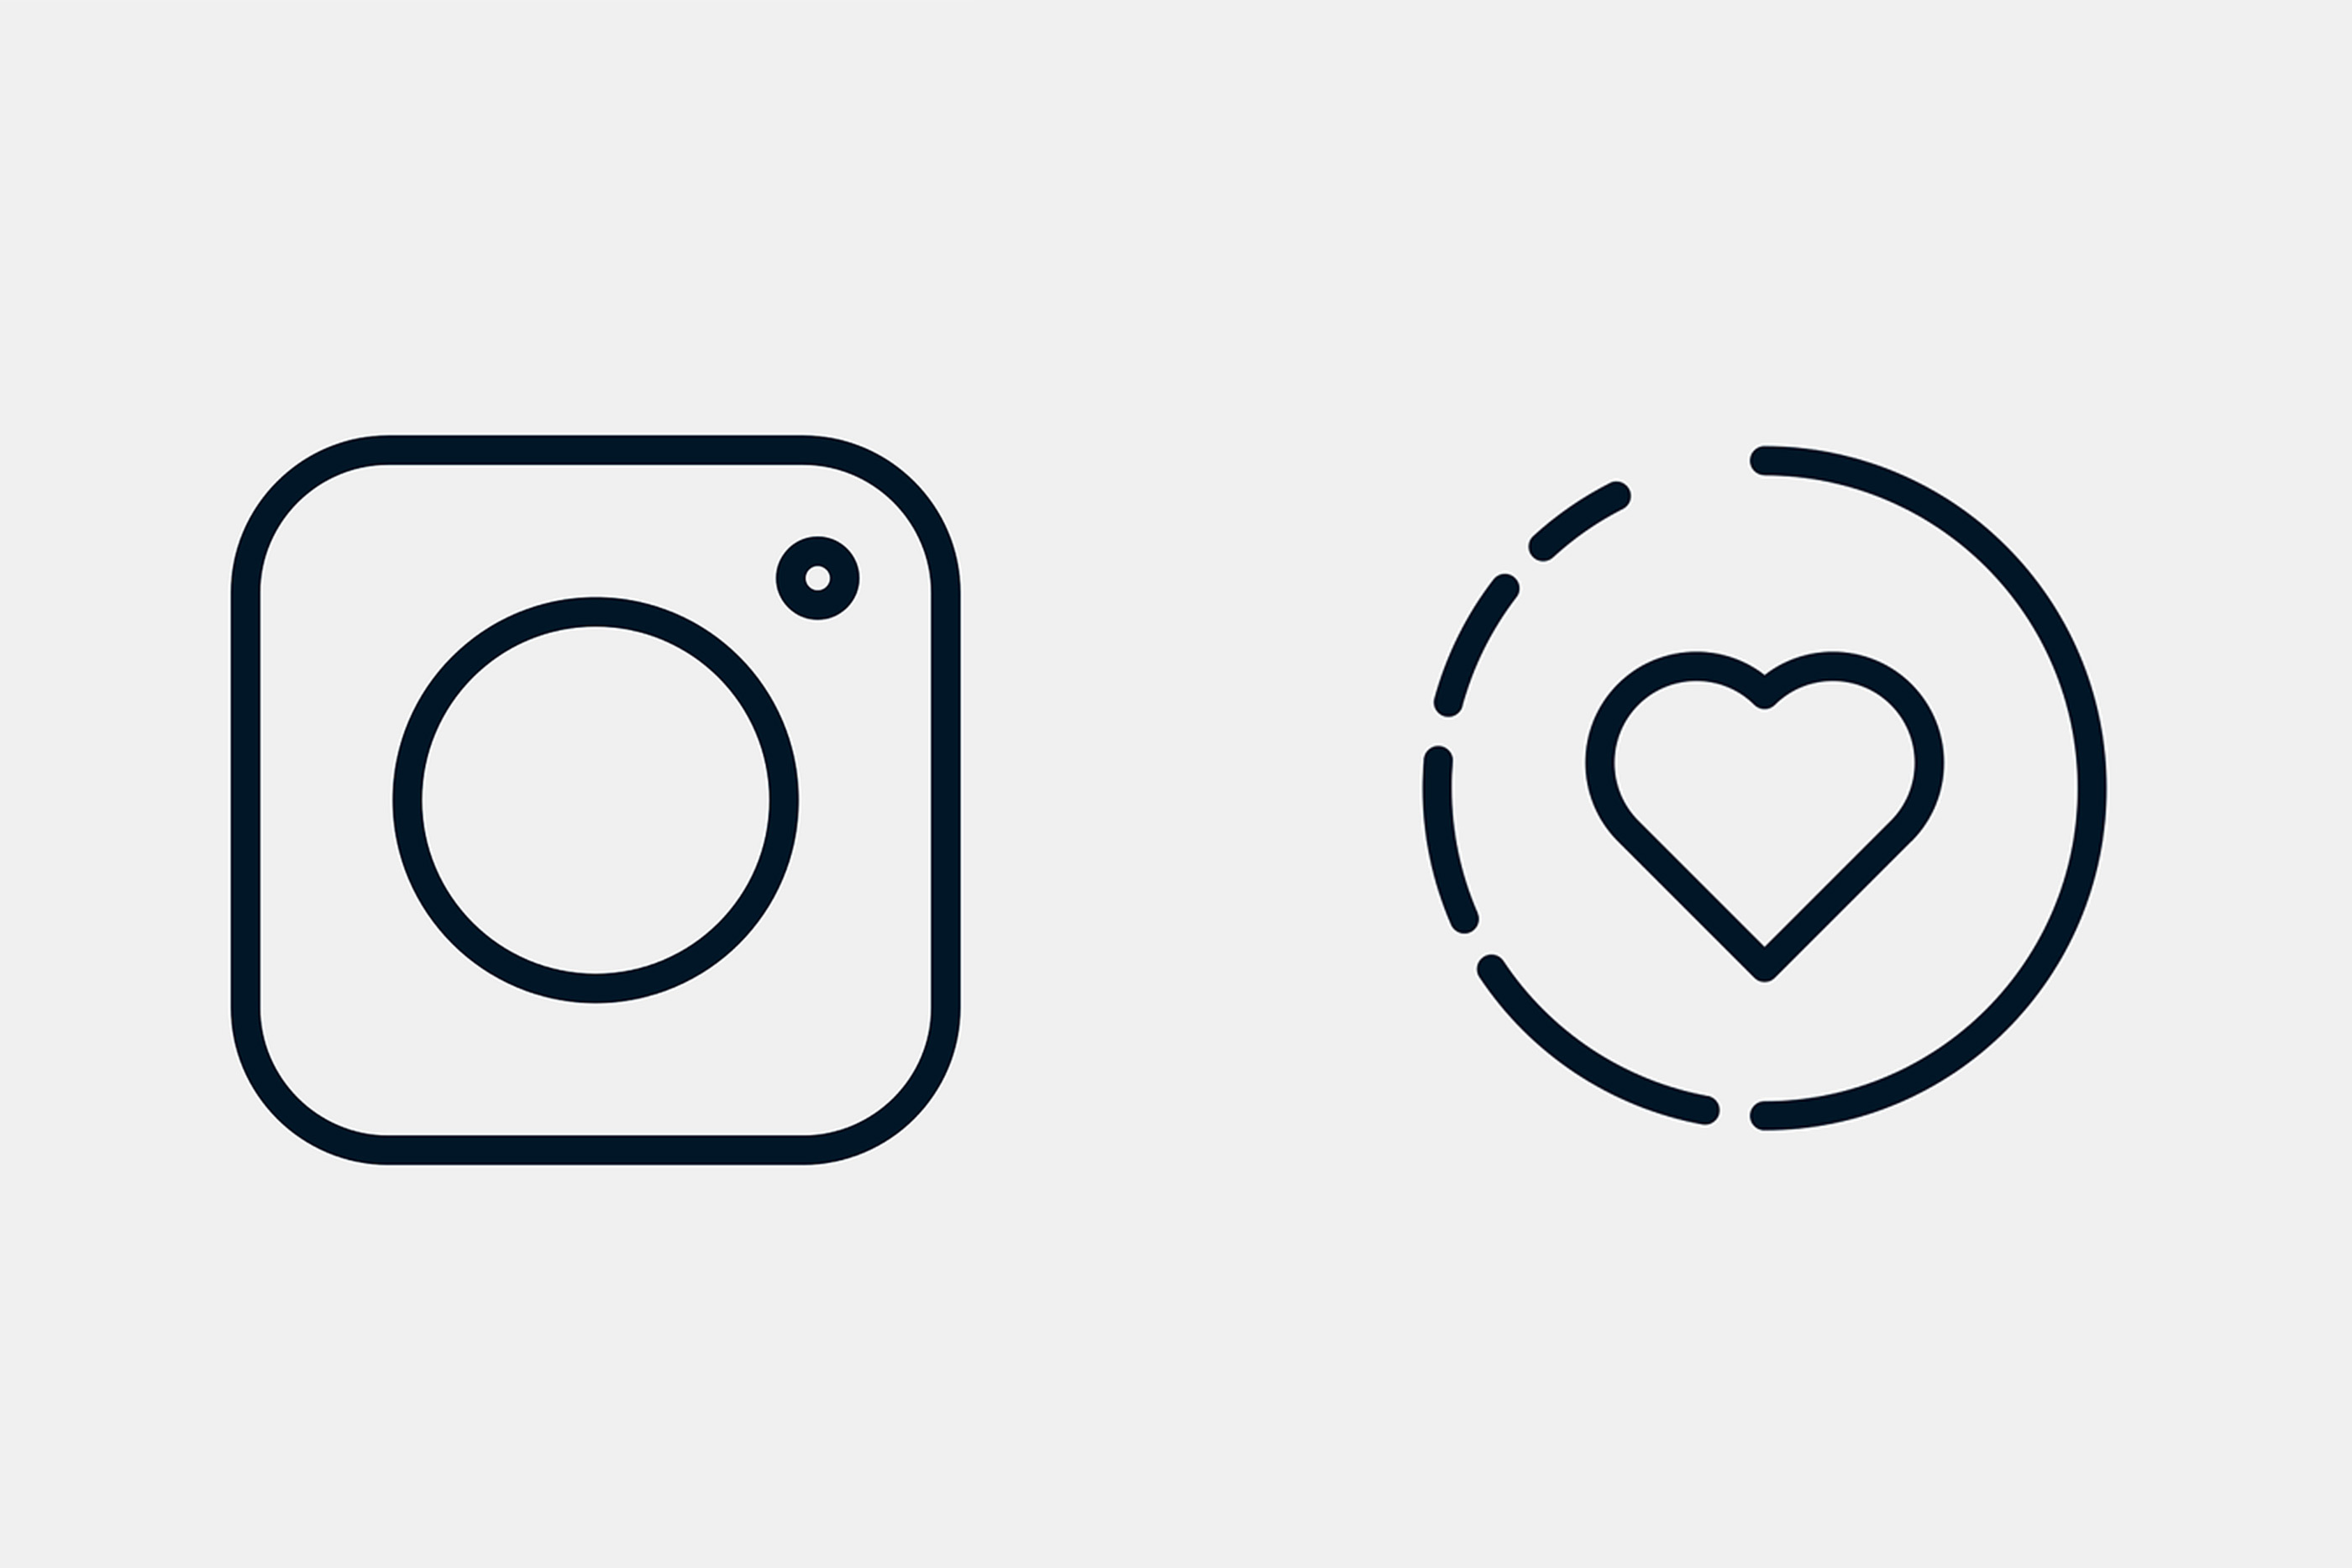 Dois ícones que representam dois símbolos presentes na rede social instagram.